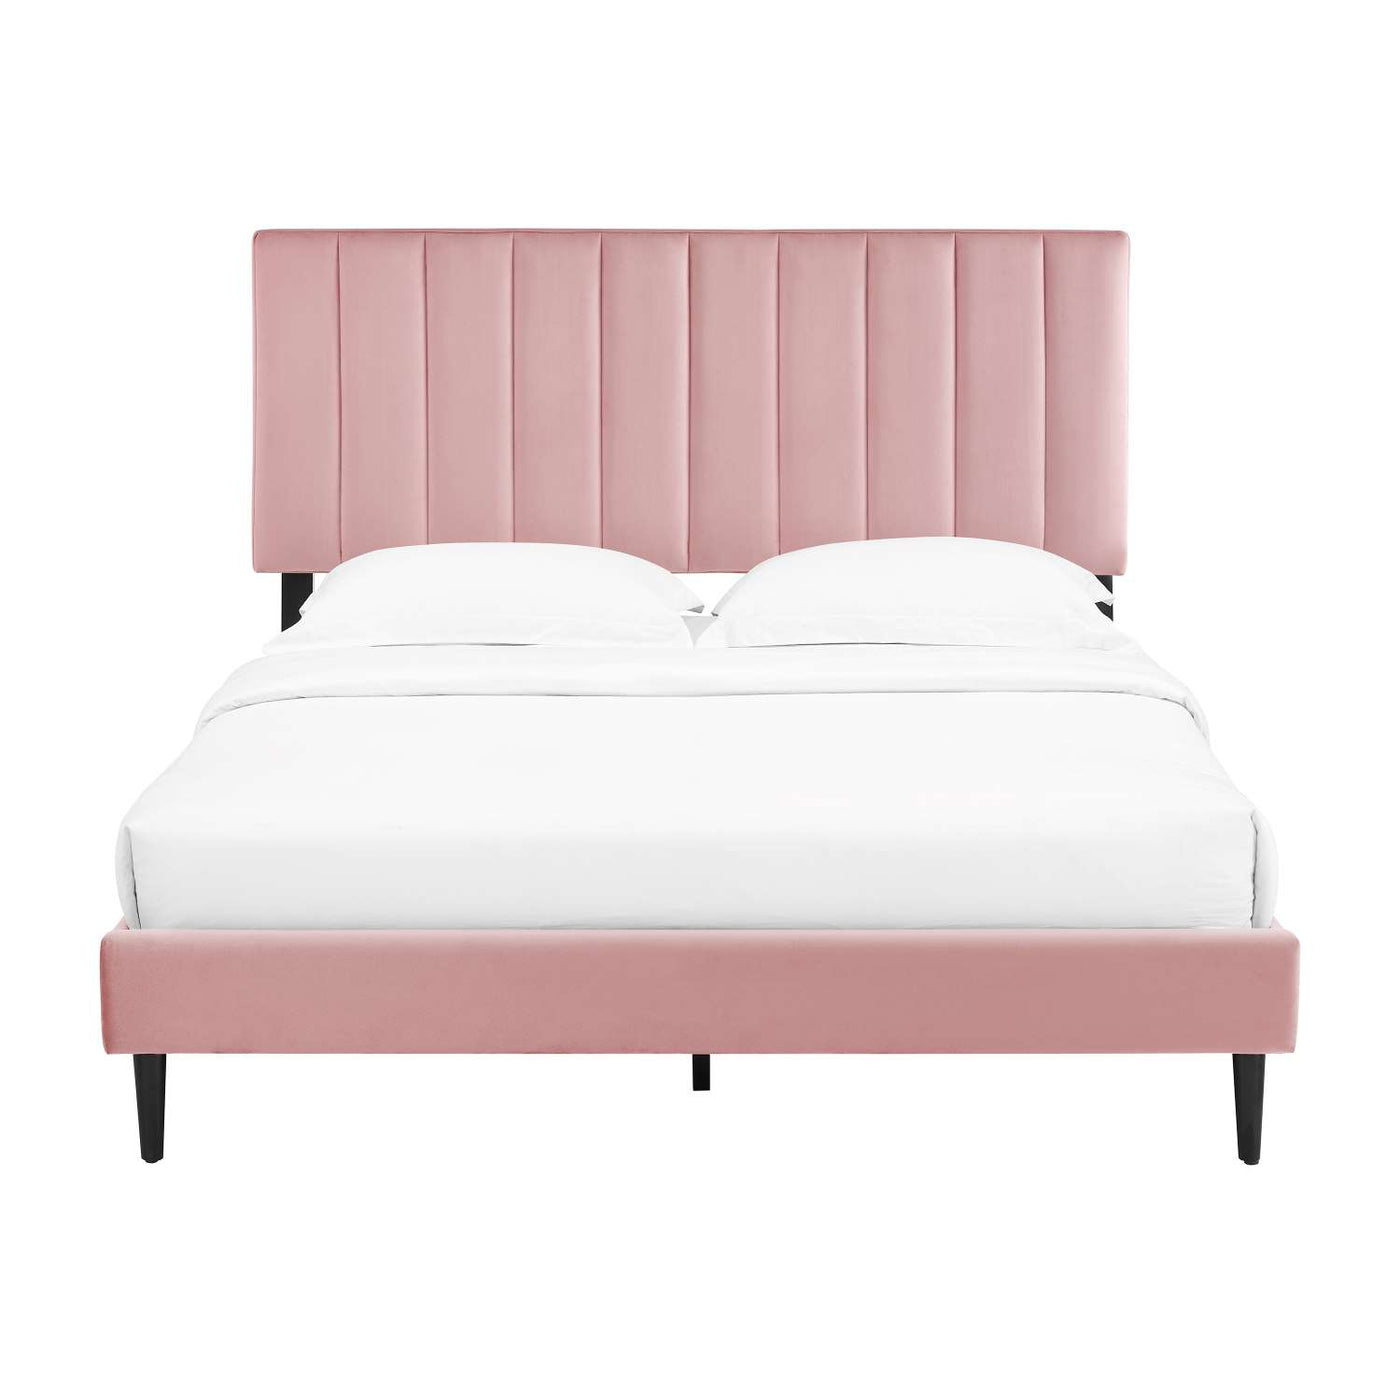 Kalina 3-Piece Queen Bed - Pink